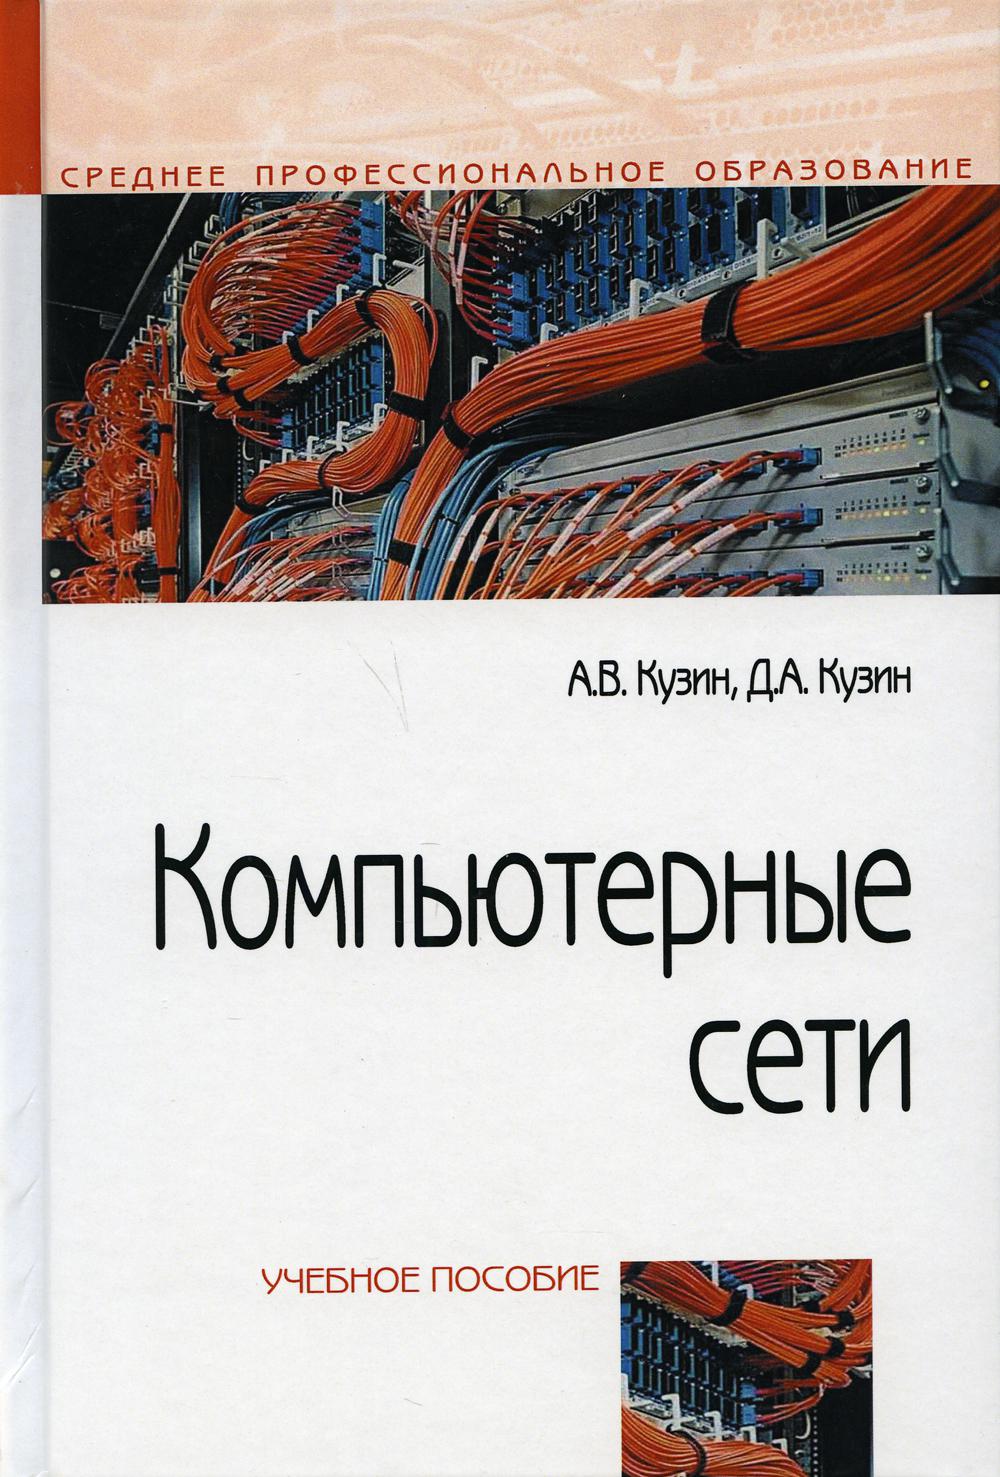 Компьютерные сети: Учебное пособие. 4-е изд., перераб. и доп